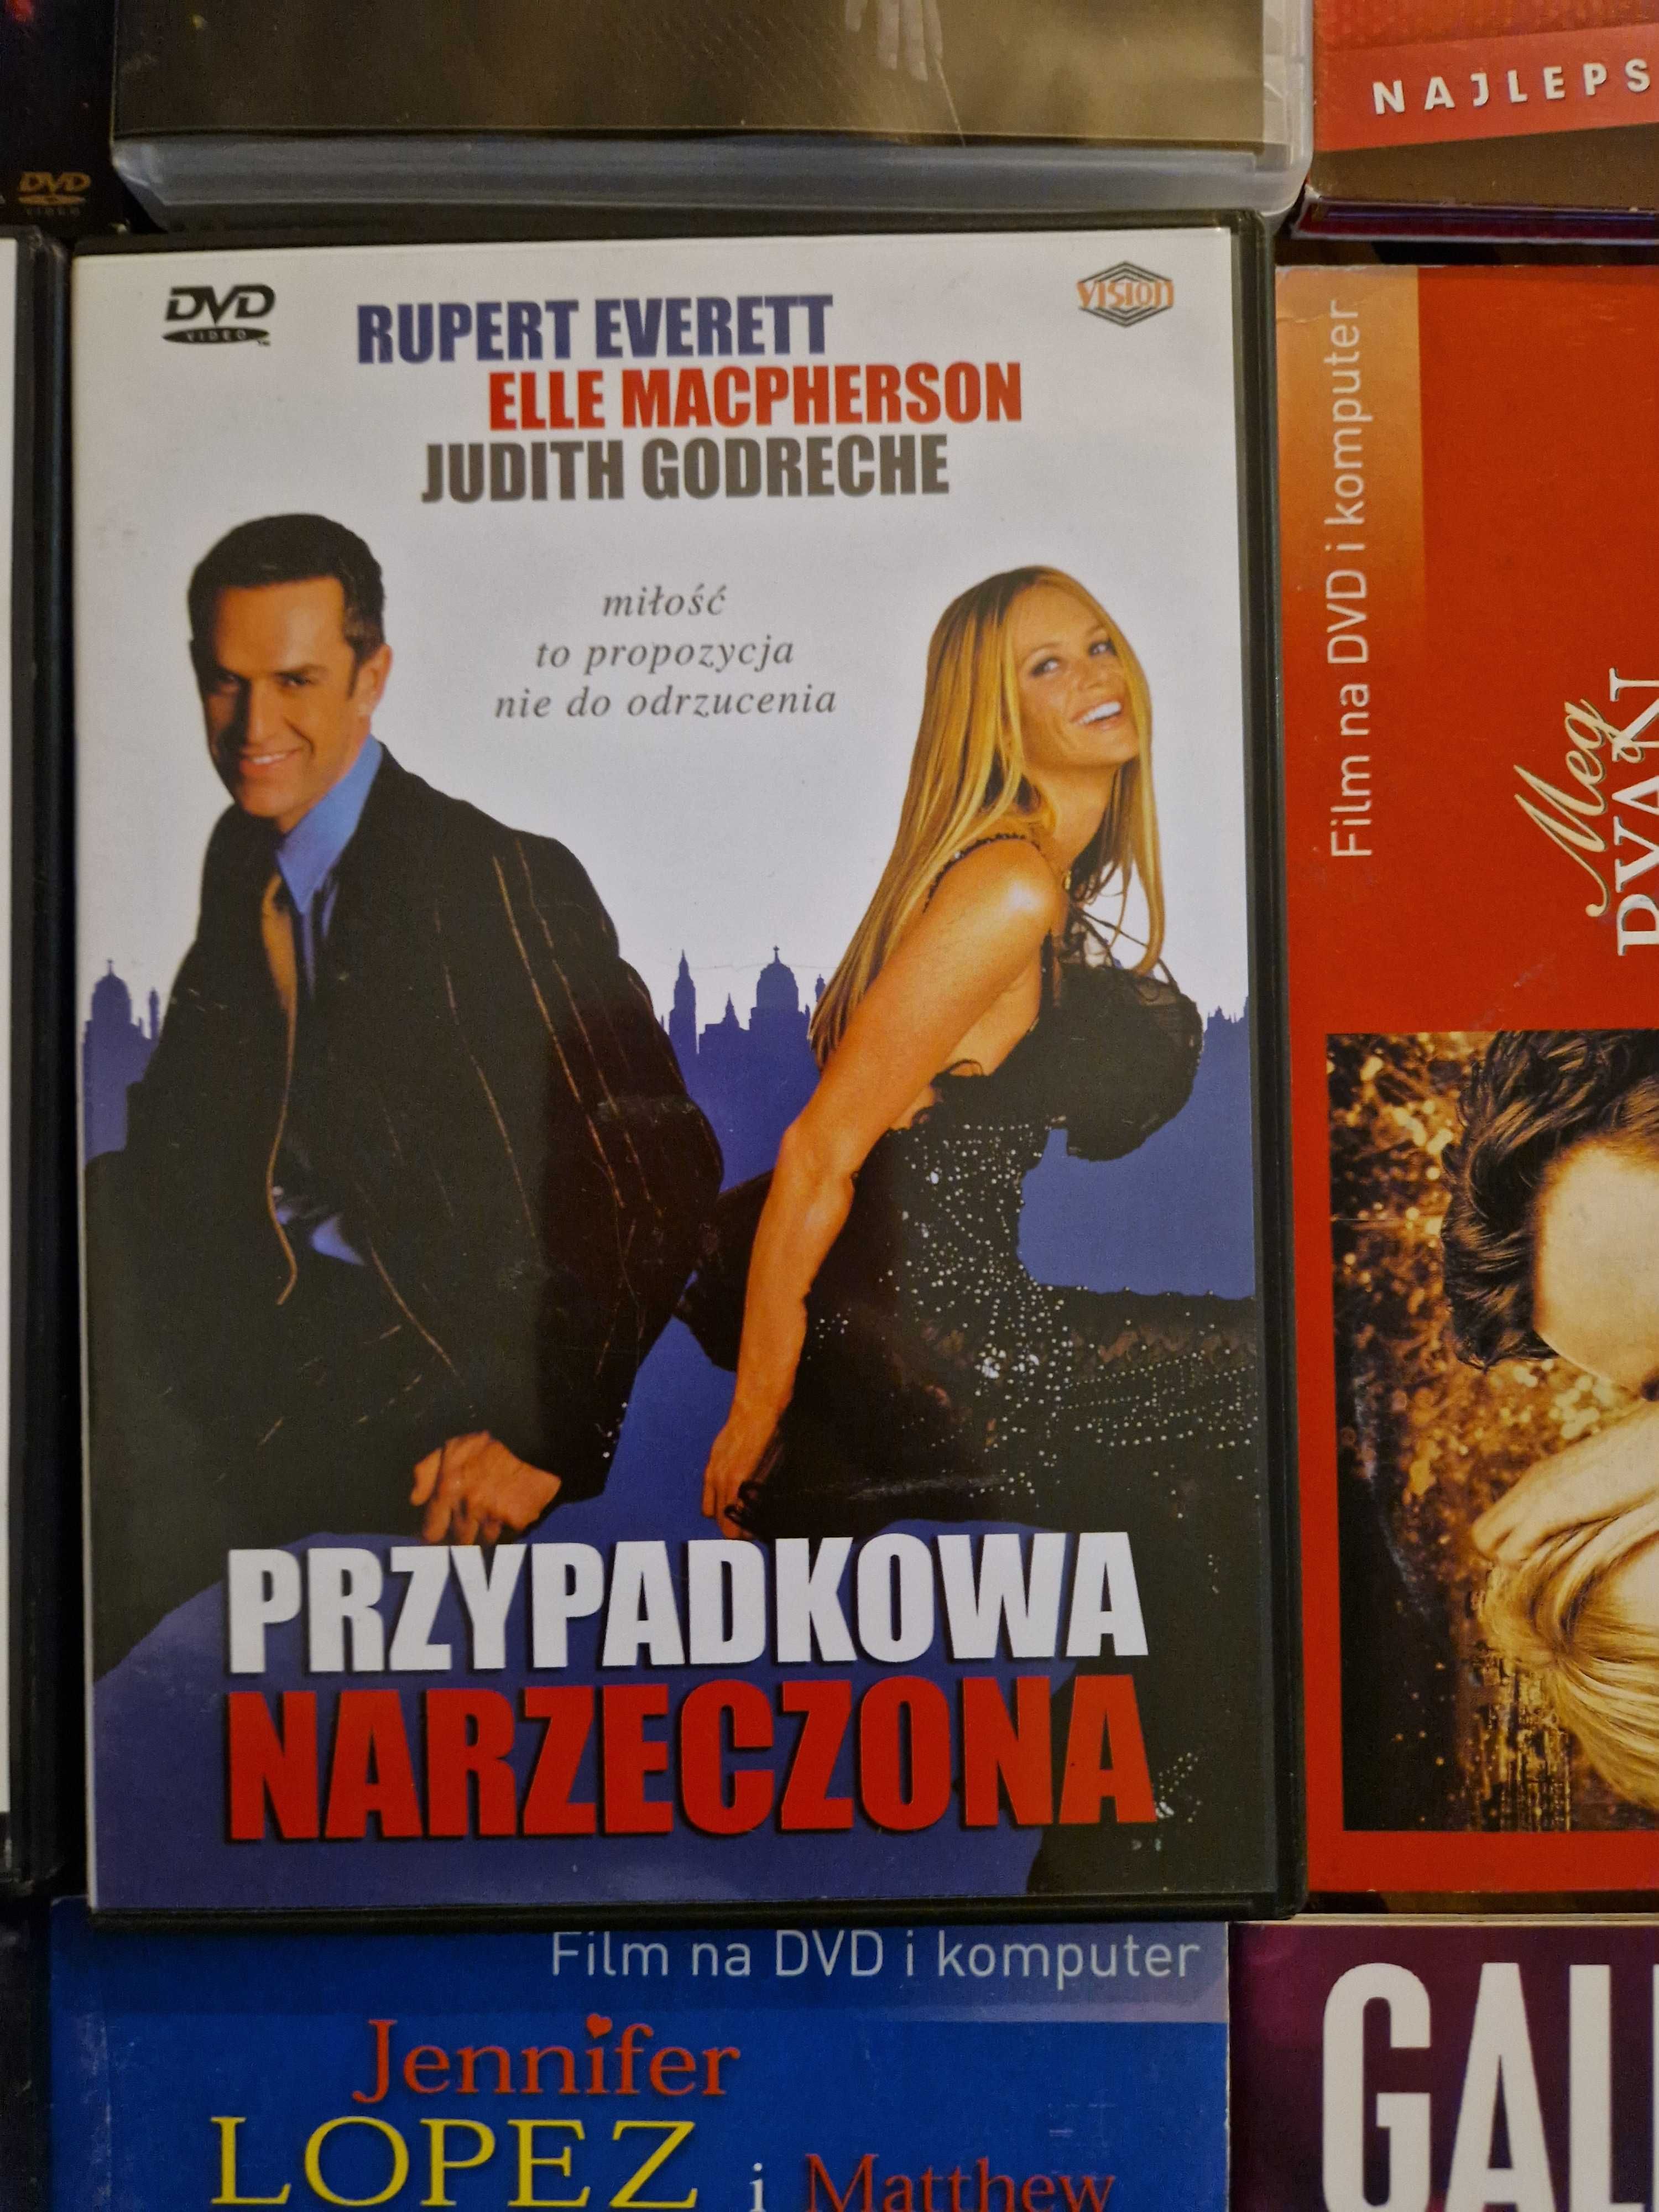 Filmy DVD 9 szt. Kosogłos, Narodziny Gwiazdy, Idealny facet i inne